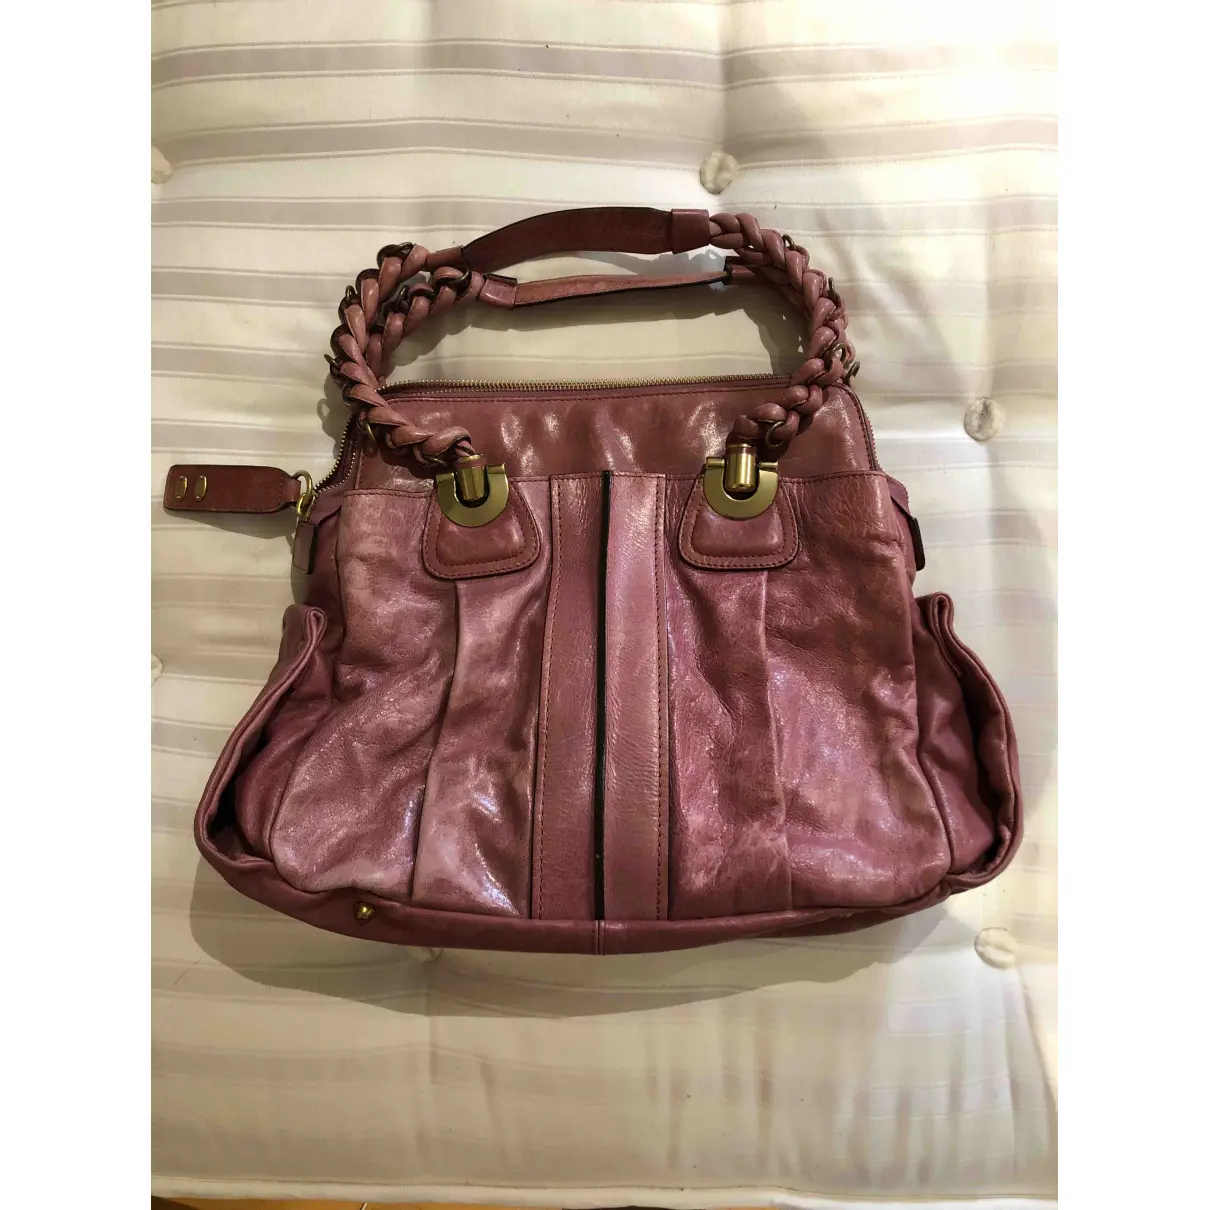 Buy Chloé Héloise leather handbag online